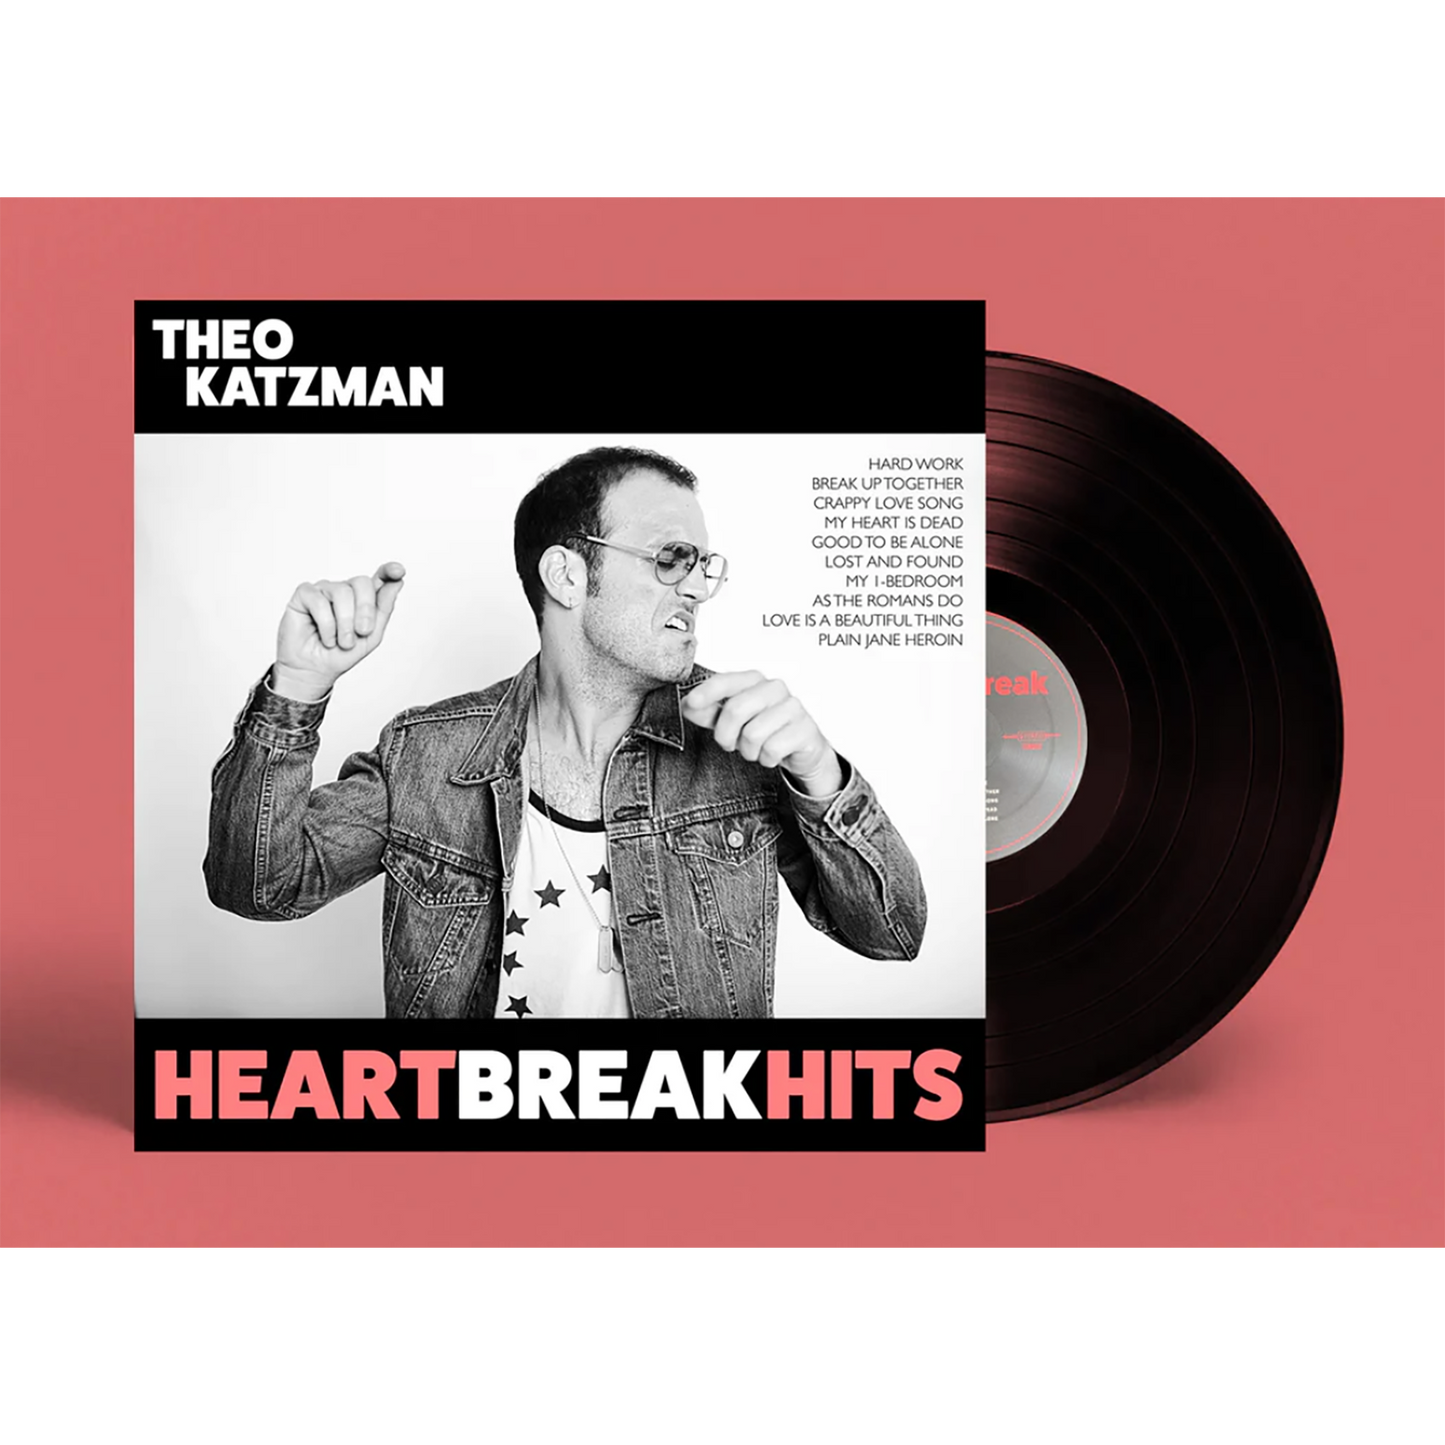 HEARTBREAK HITS // Archer Records Pressing